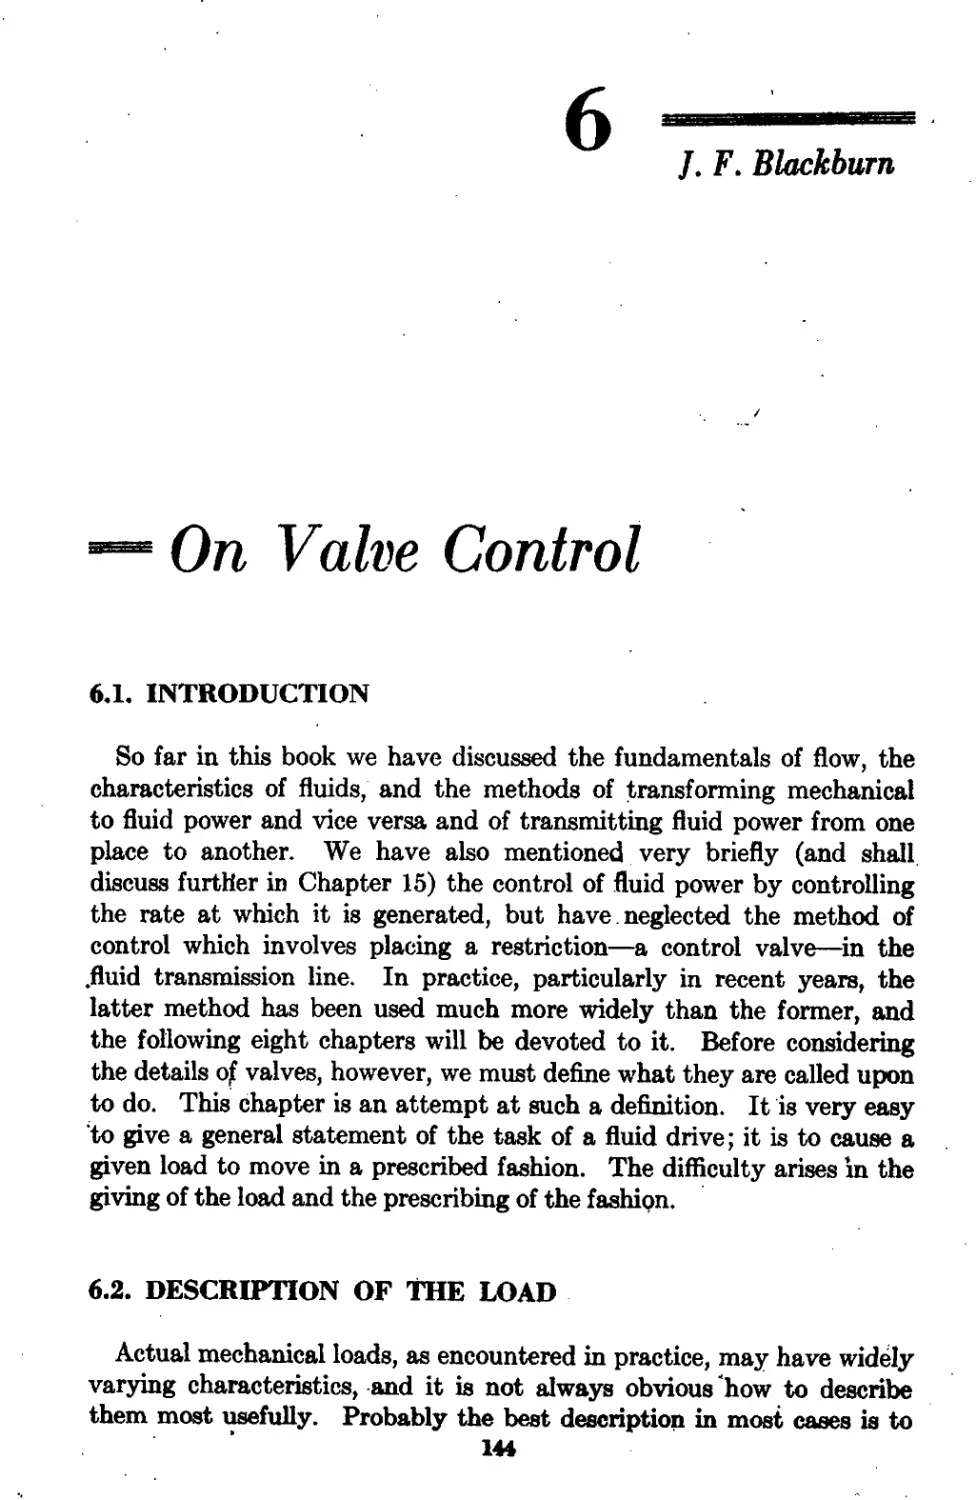 Chapter 6 On Valve Control: J.F. Blackburn
6.2 Description of the Load